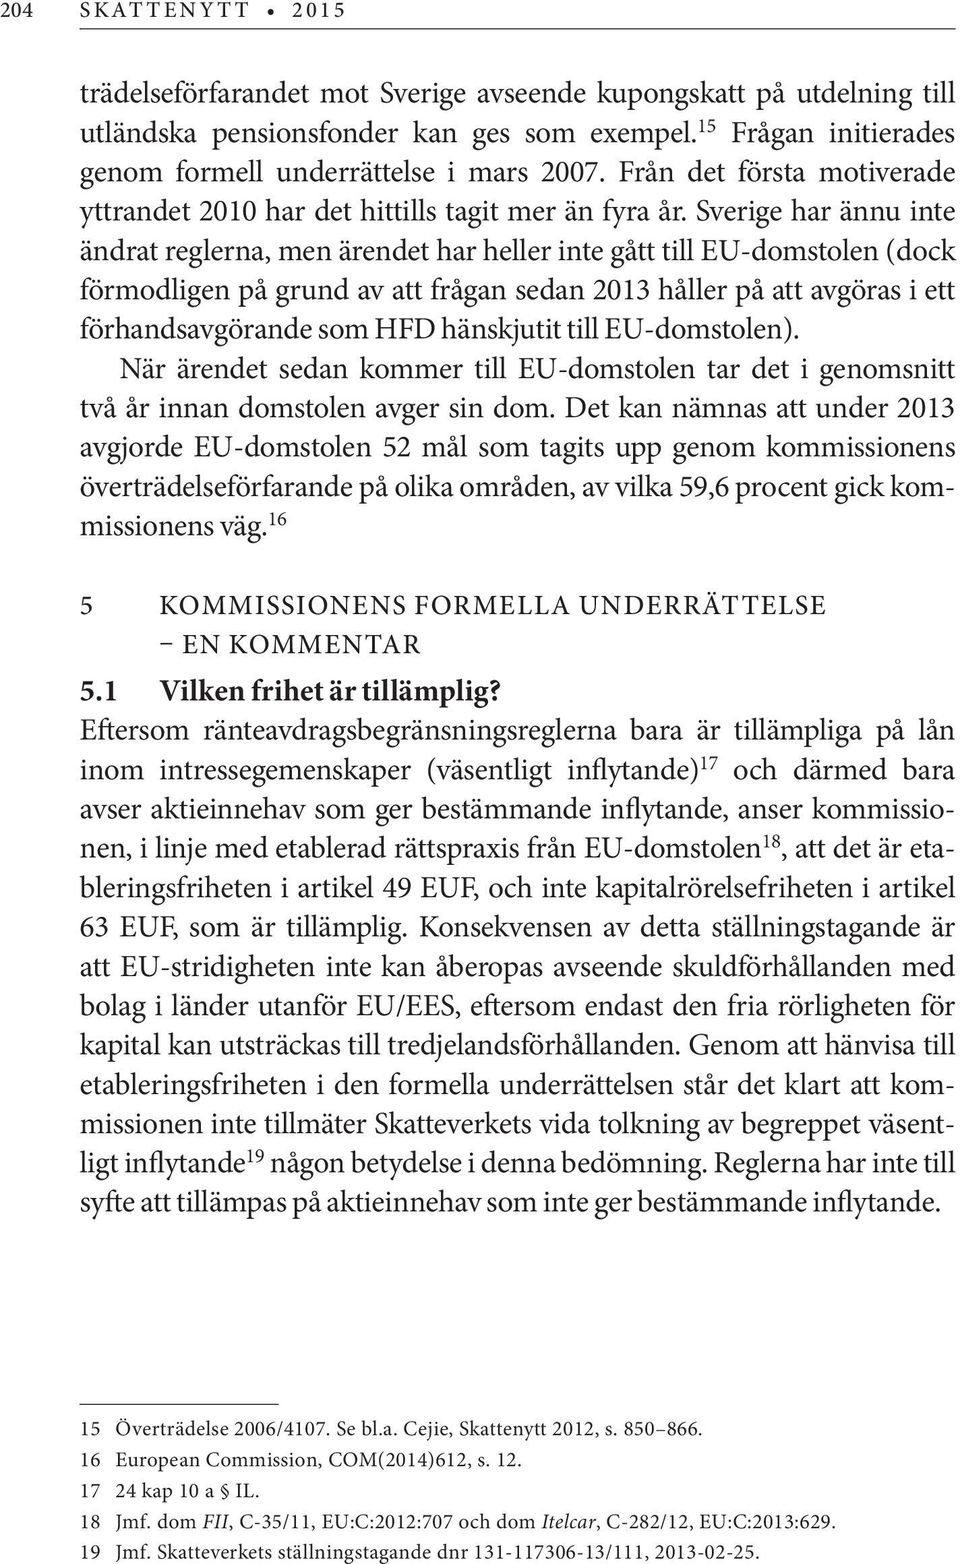 Sverige har ännu inte ändrat reglerna, men ärendet har heller inte gått till EU-domstolen (dock förmodligen på grund av att frågan sedan 2013 håller på att avgöras i ett förhandsavgörande som HFD